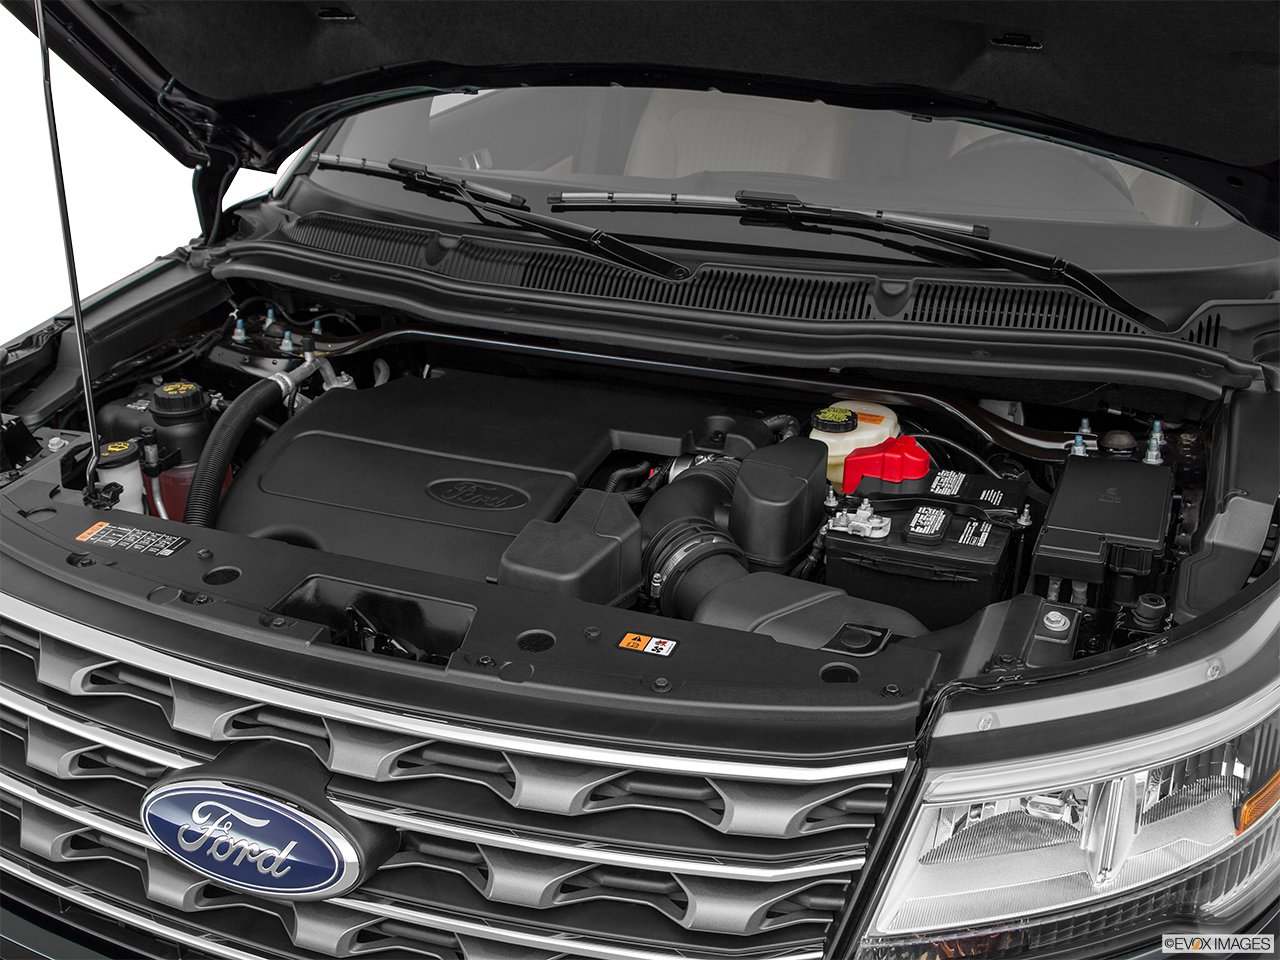 Панель под капотом. Двигатель Ford Explorer 3.5. Форд эксплорер 2018 двигатель 3.5. Ford Explorer 2013 АКБ. Ford Explorer 5 двигатель.